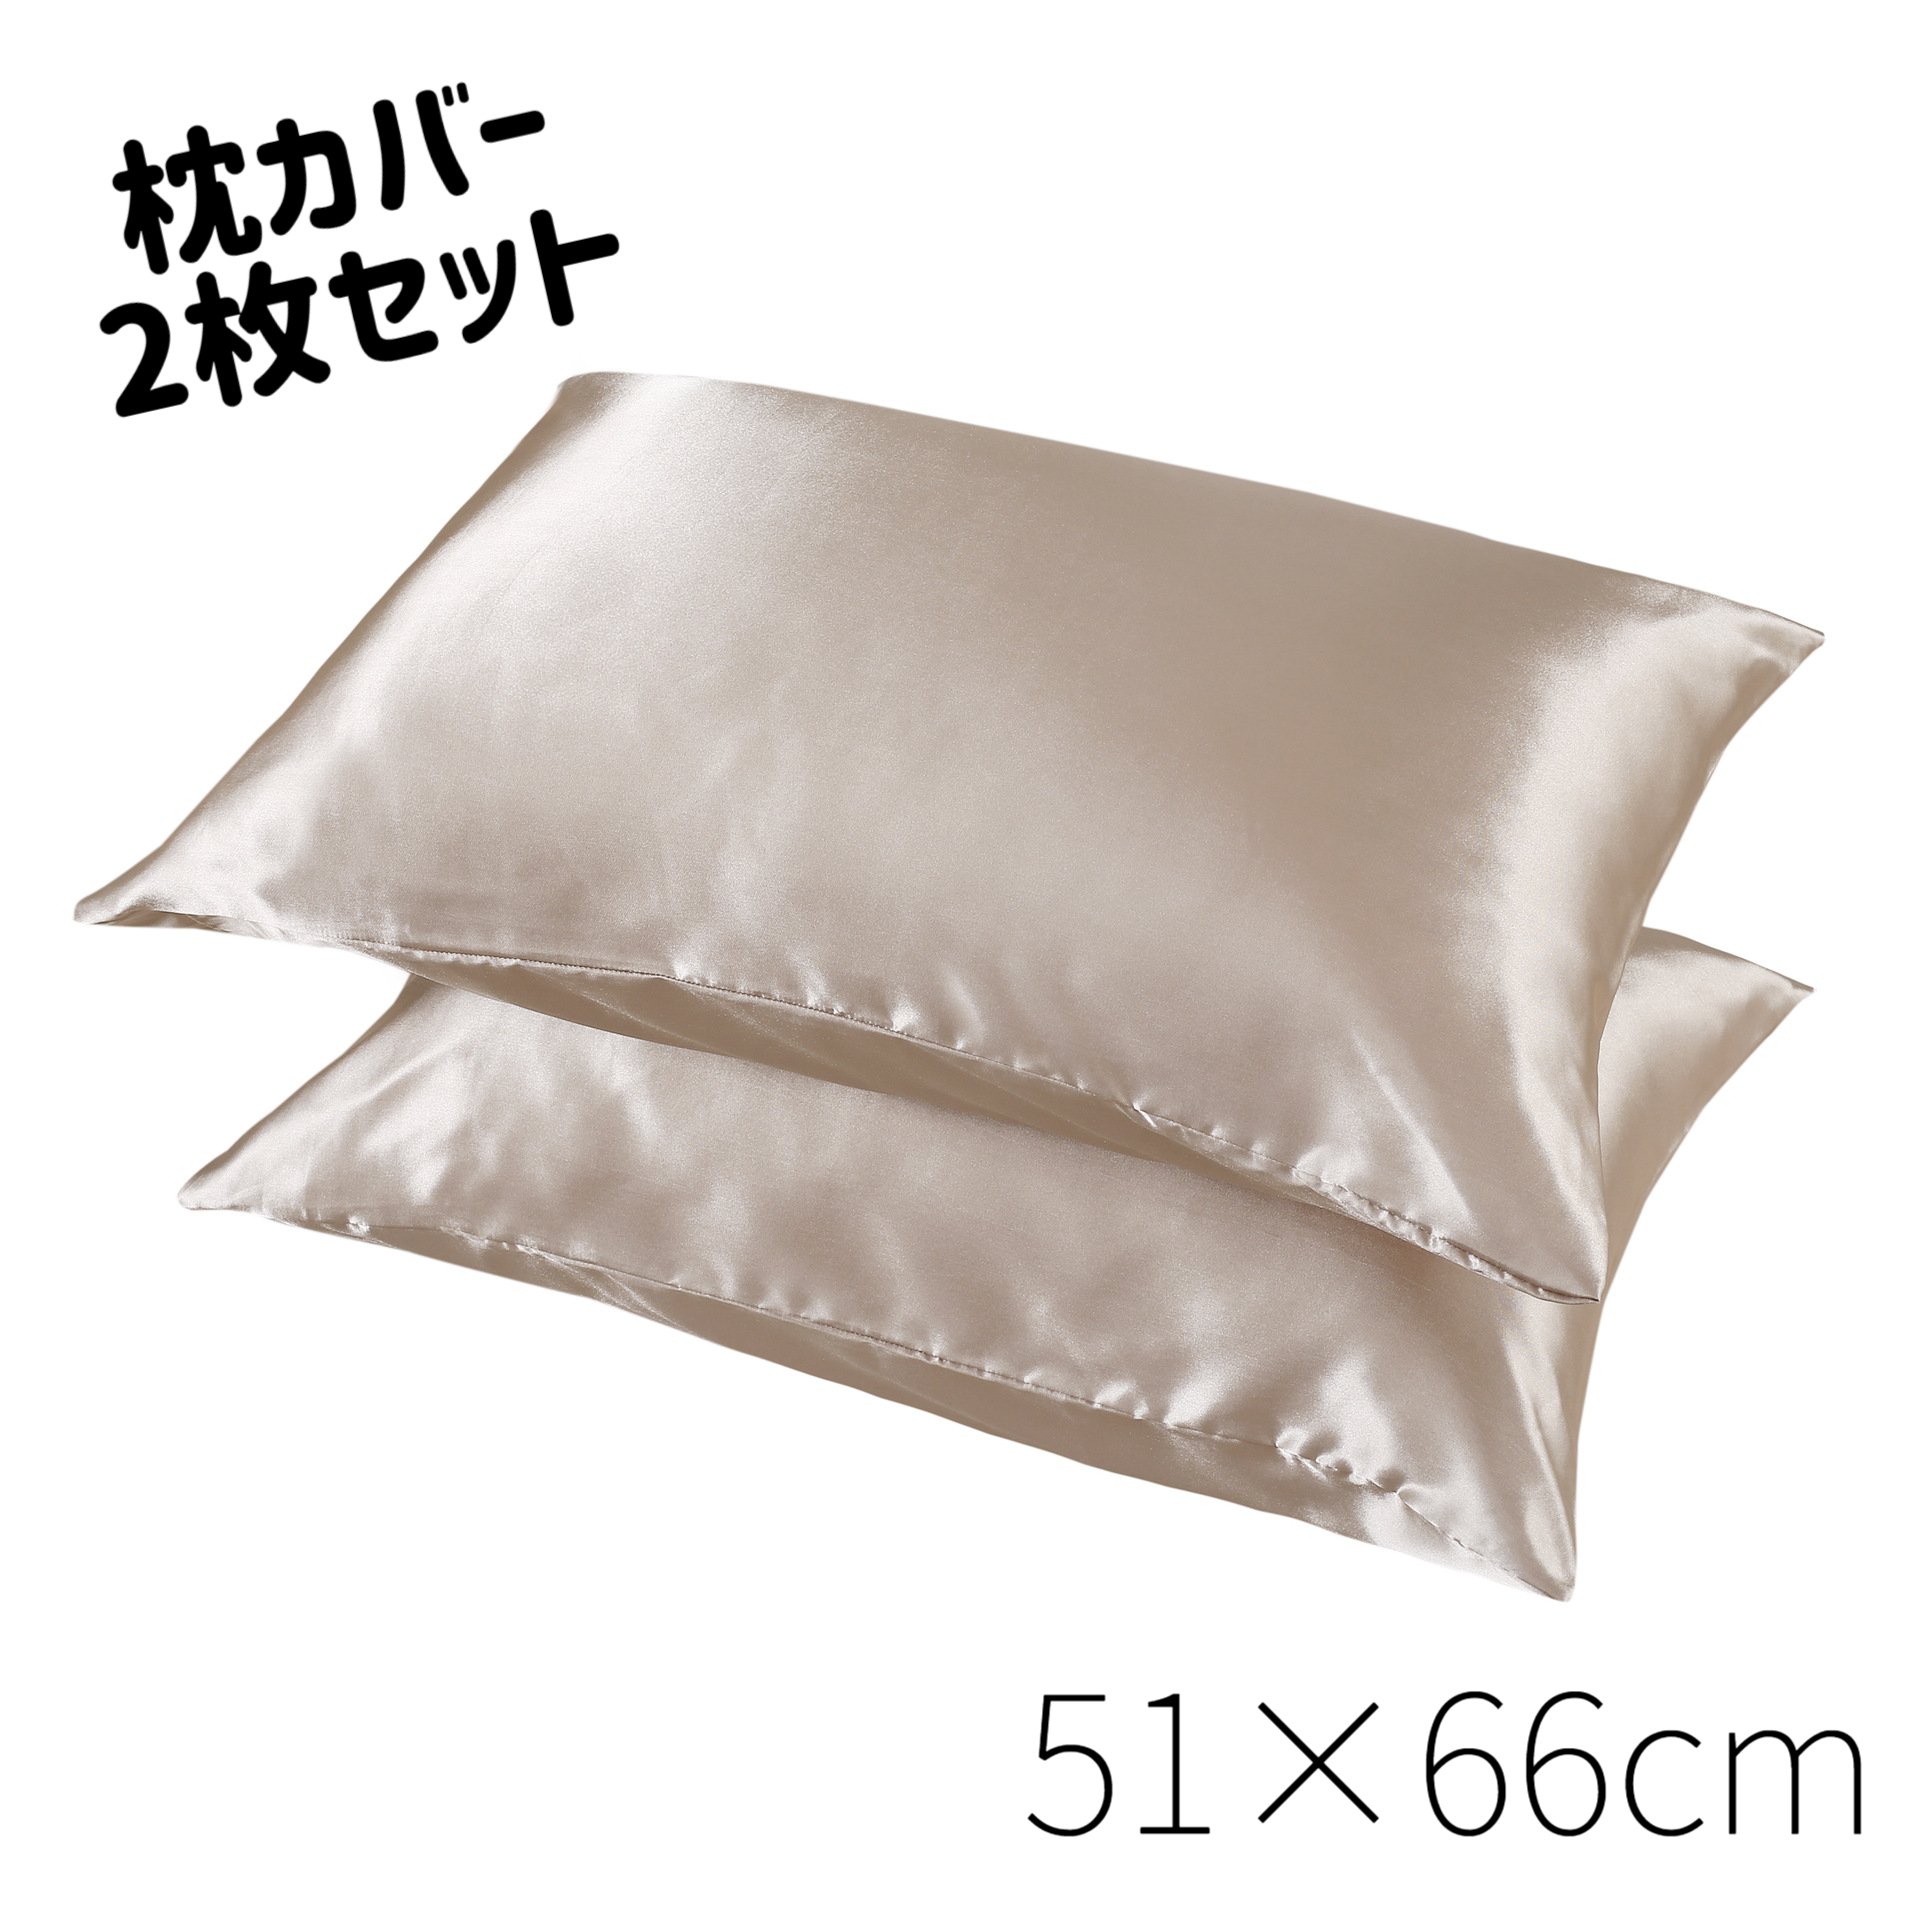 ★サテン枕カバー 2枚組 封筒式 51×66cm ピローケース 枕カバー 標準サイス サテン